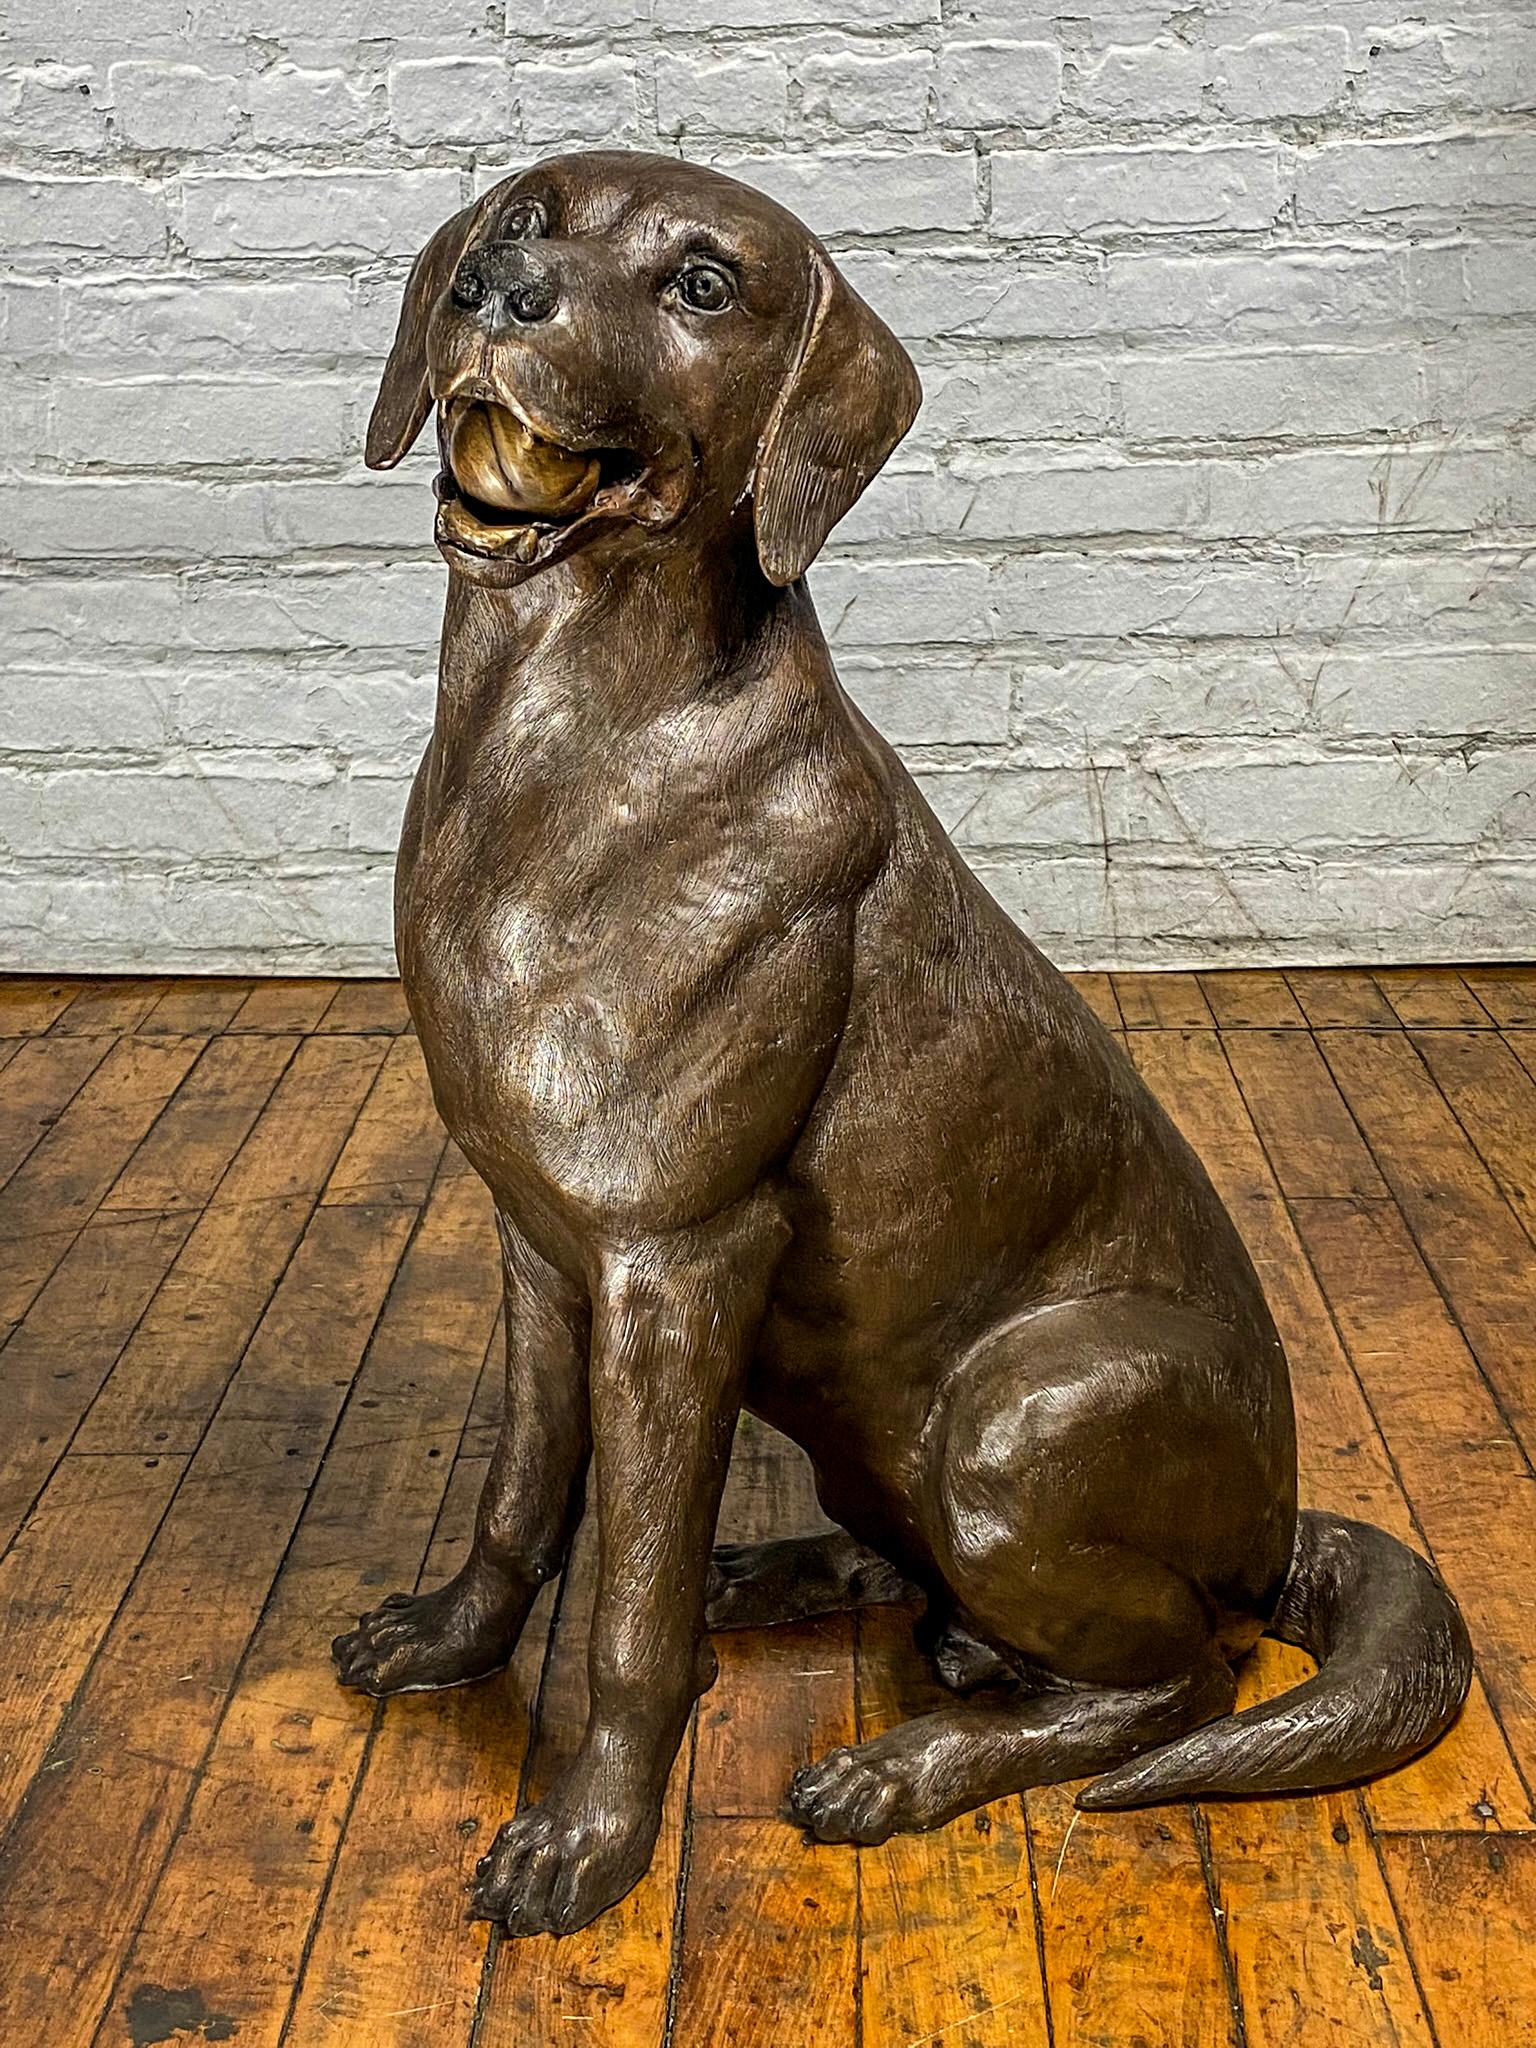 Notre magnifique statue de chien Labrador Retriever en bronze, en édition limitée et personnalisée, est conçue d'après notre chien bien-aimé, Bailey. Cette adorable statue en bronze représente Bailey avec une balle dans la bouche, attendant de jouer